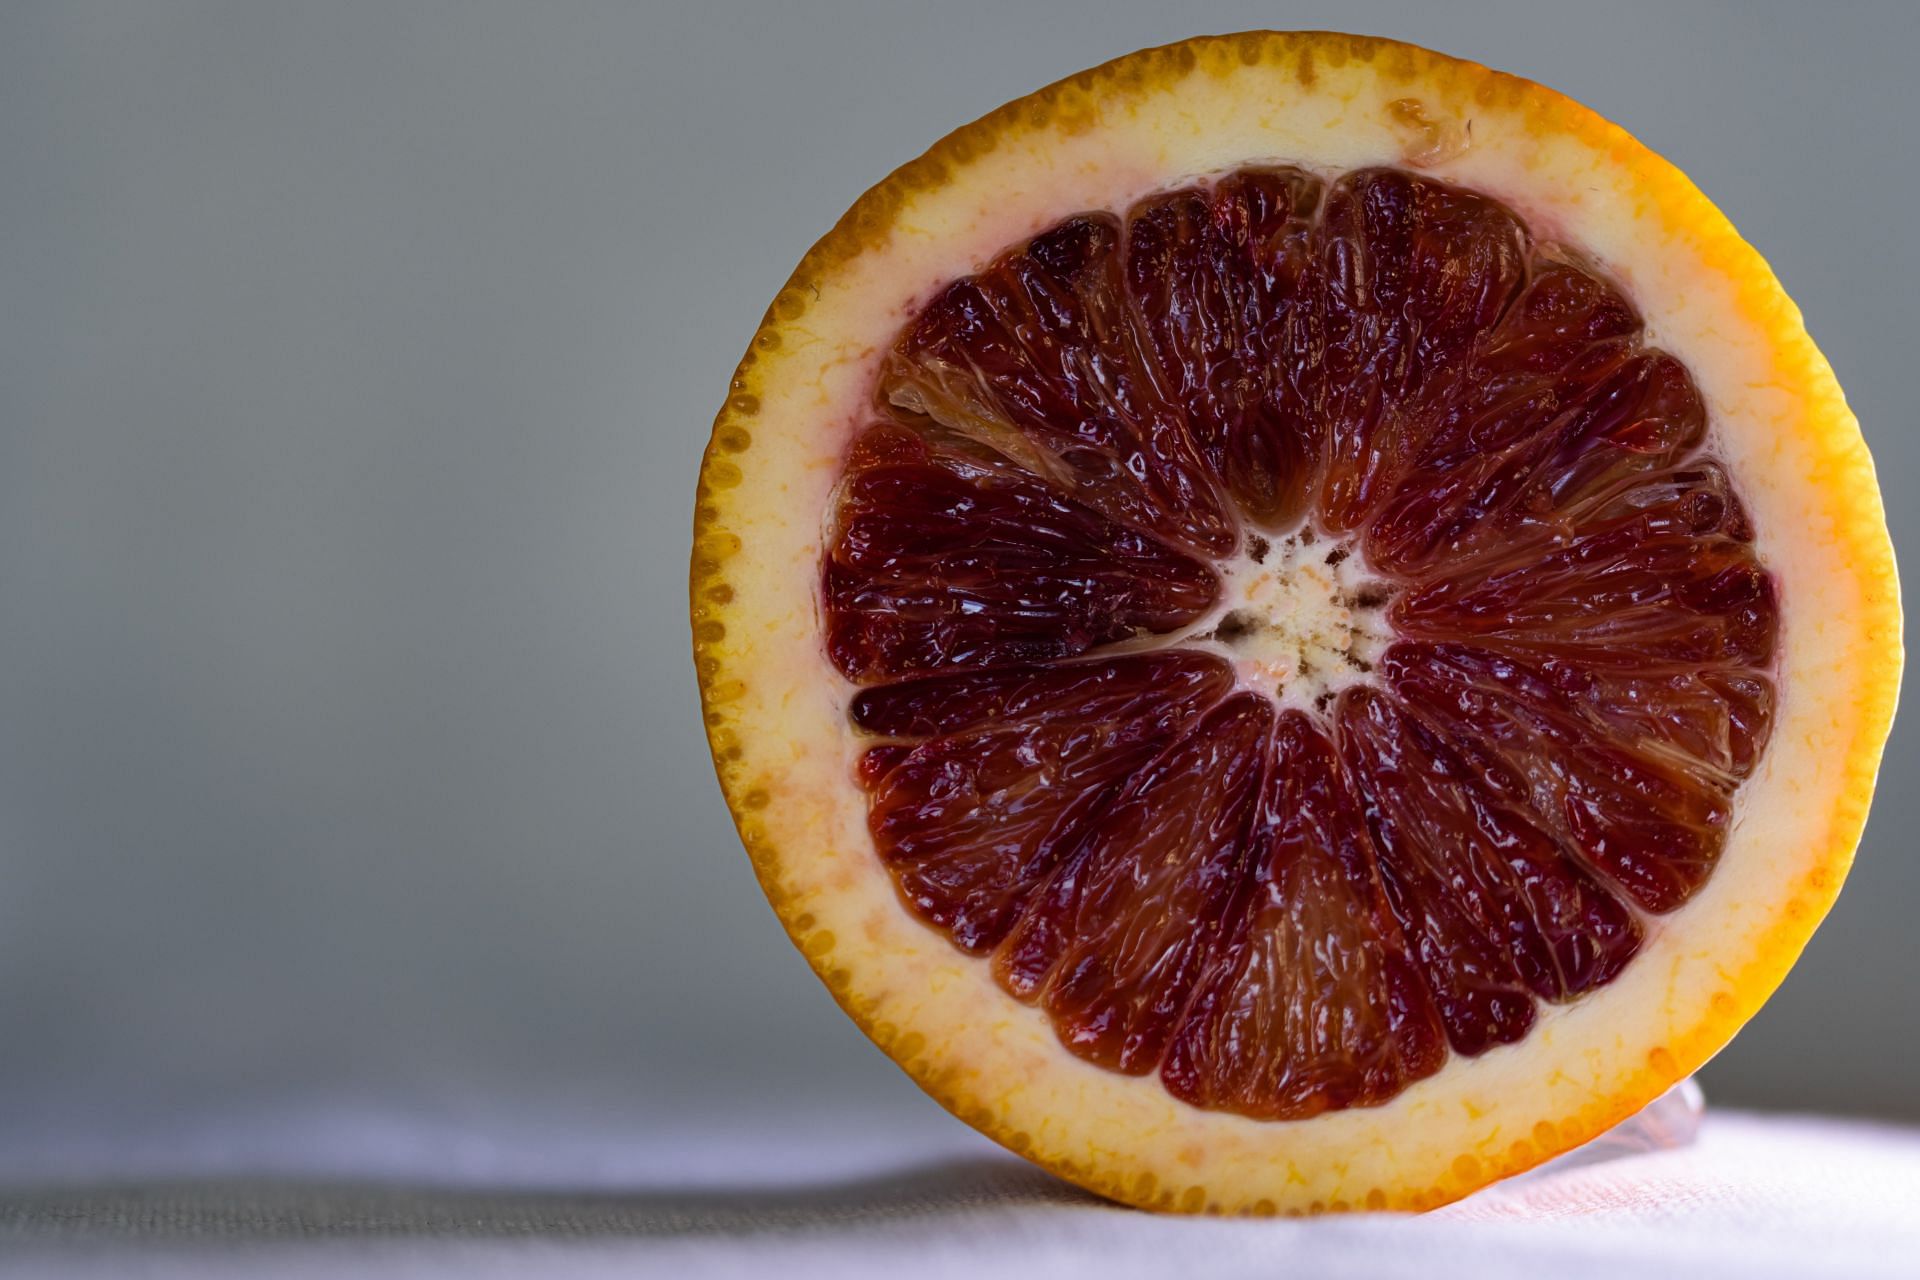 Side effects of blood orange (Image via Unsplash/Tasha)